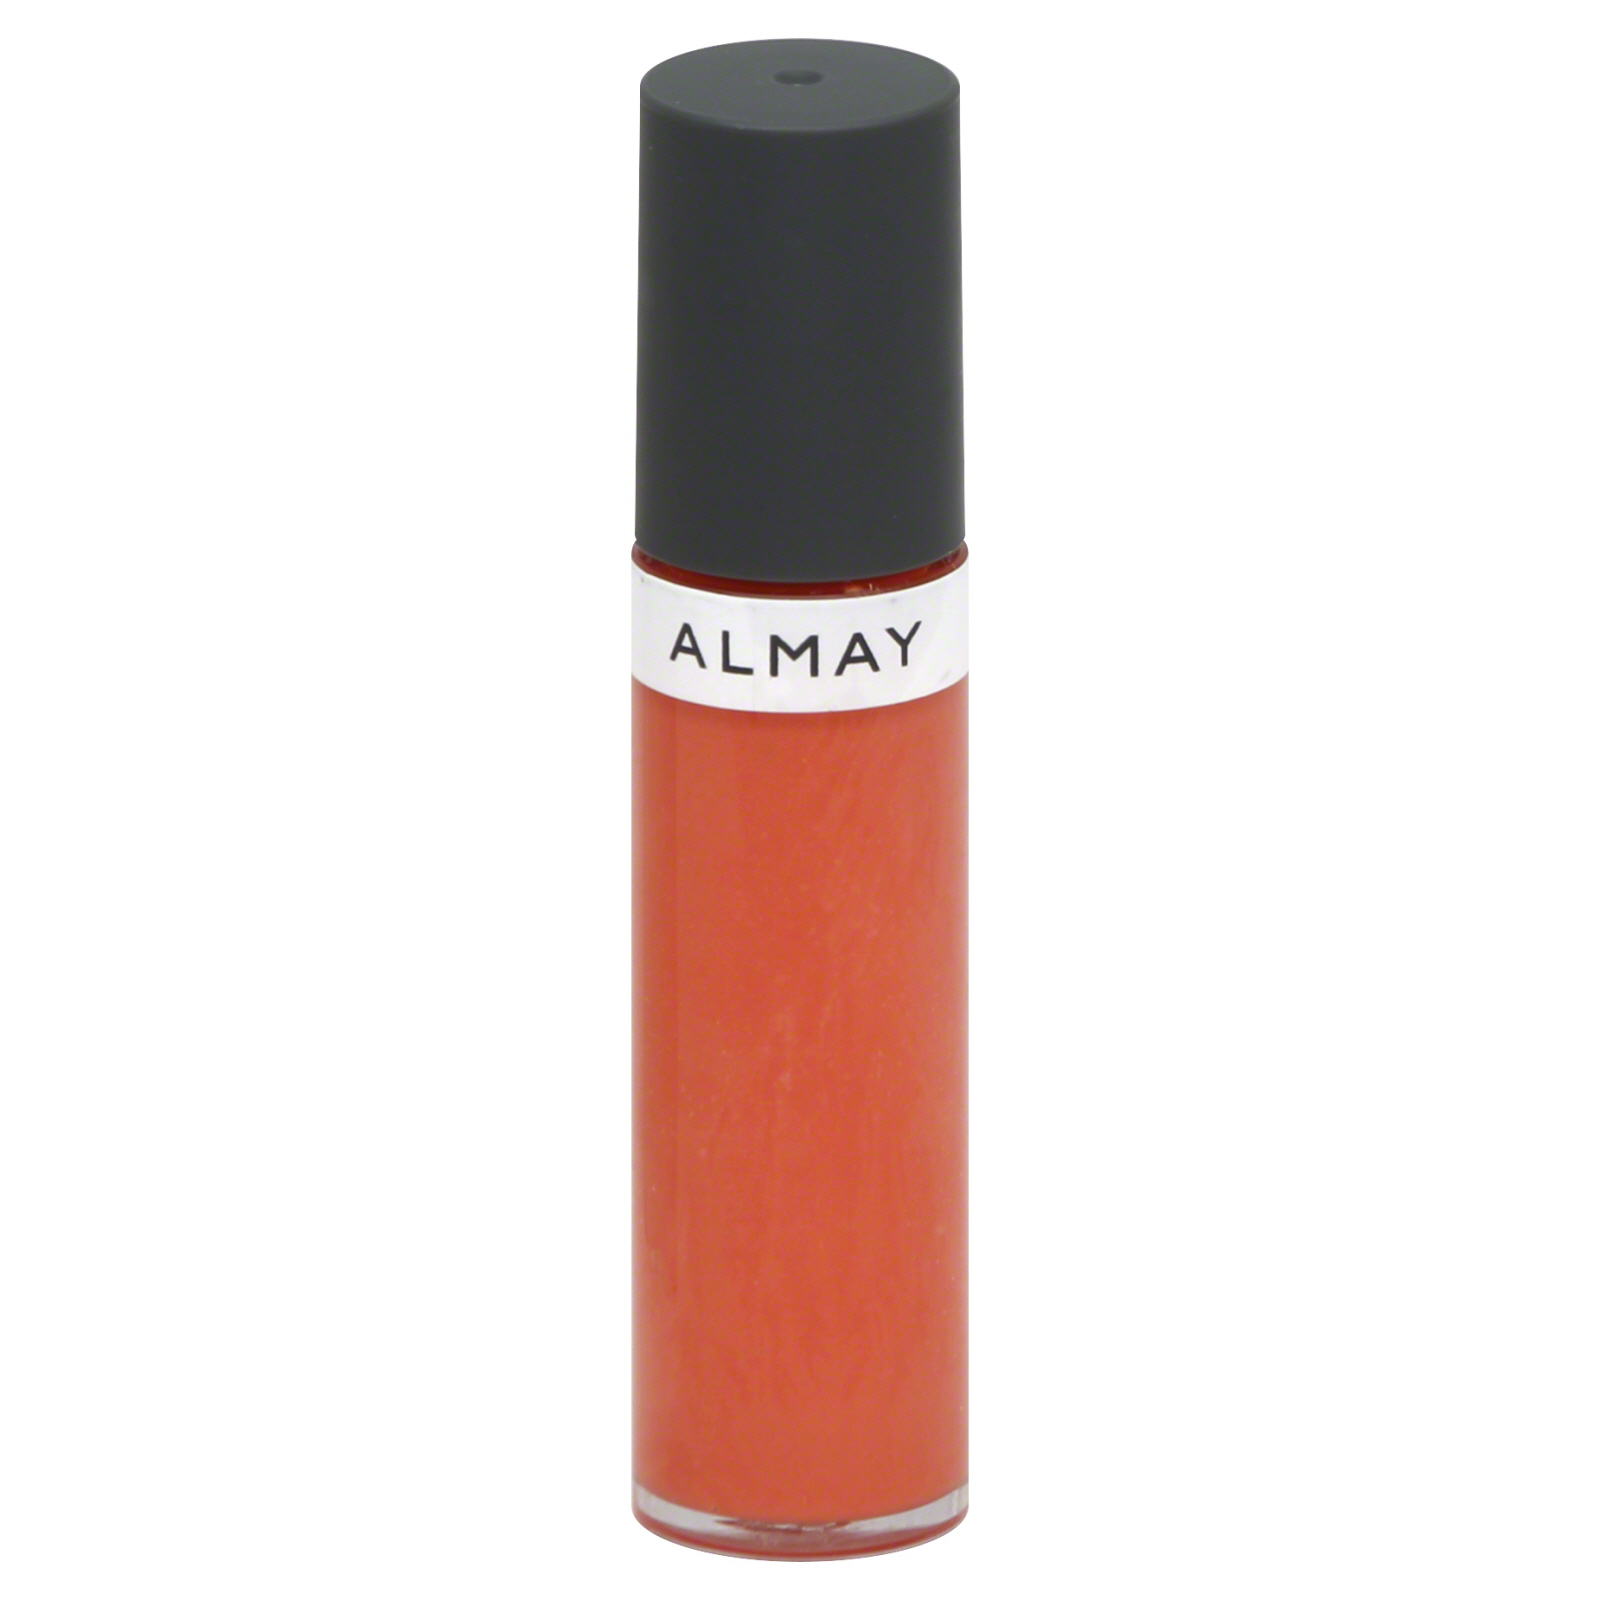 Almay Color+Care Liquid Lip Balm, Cantaloupe Cream, 0.24 fl oz (7.1 ml)